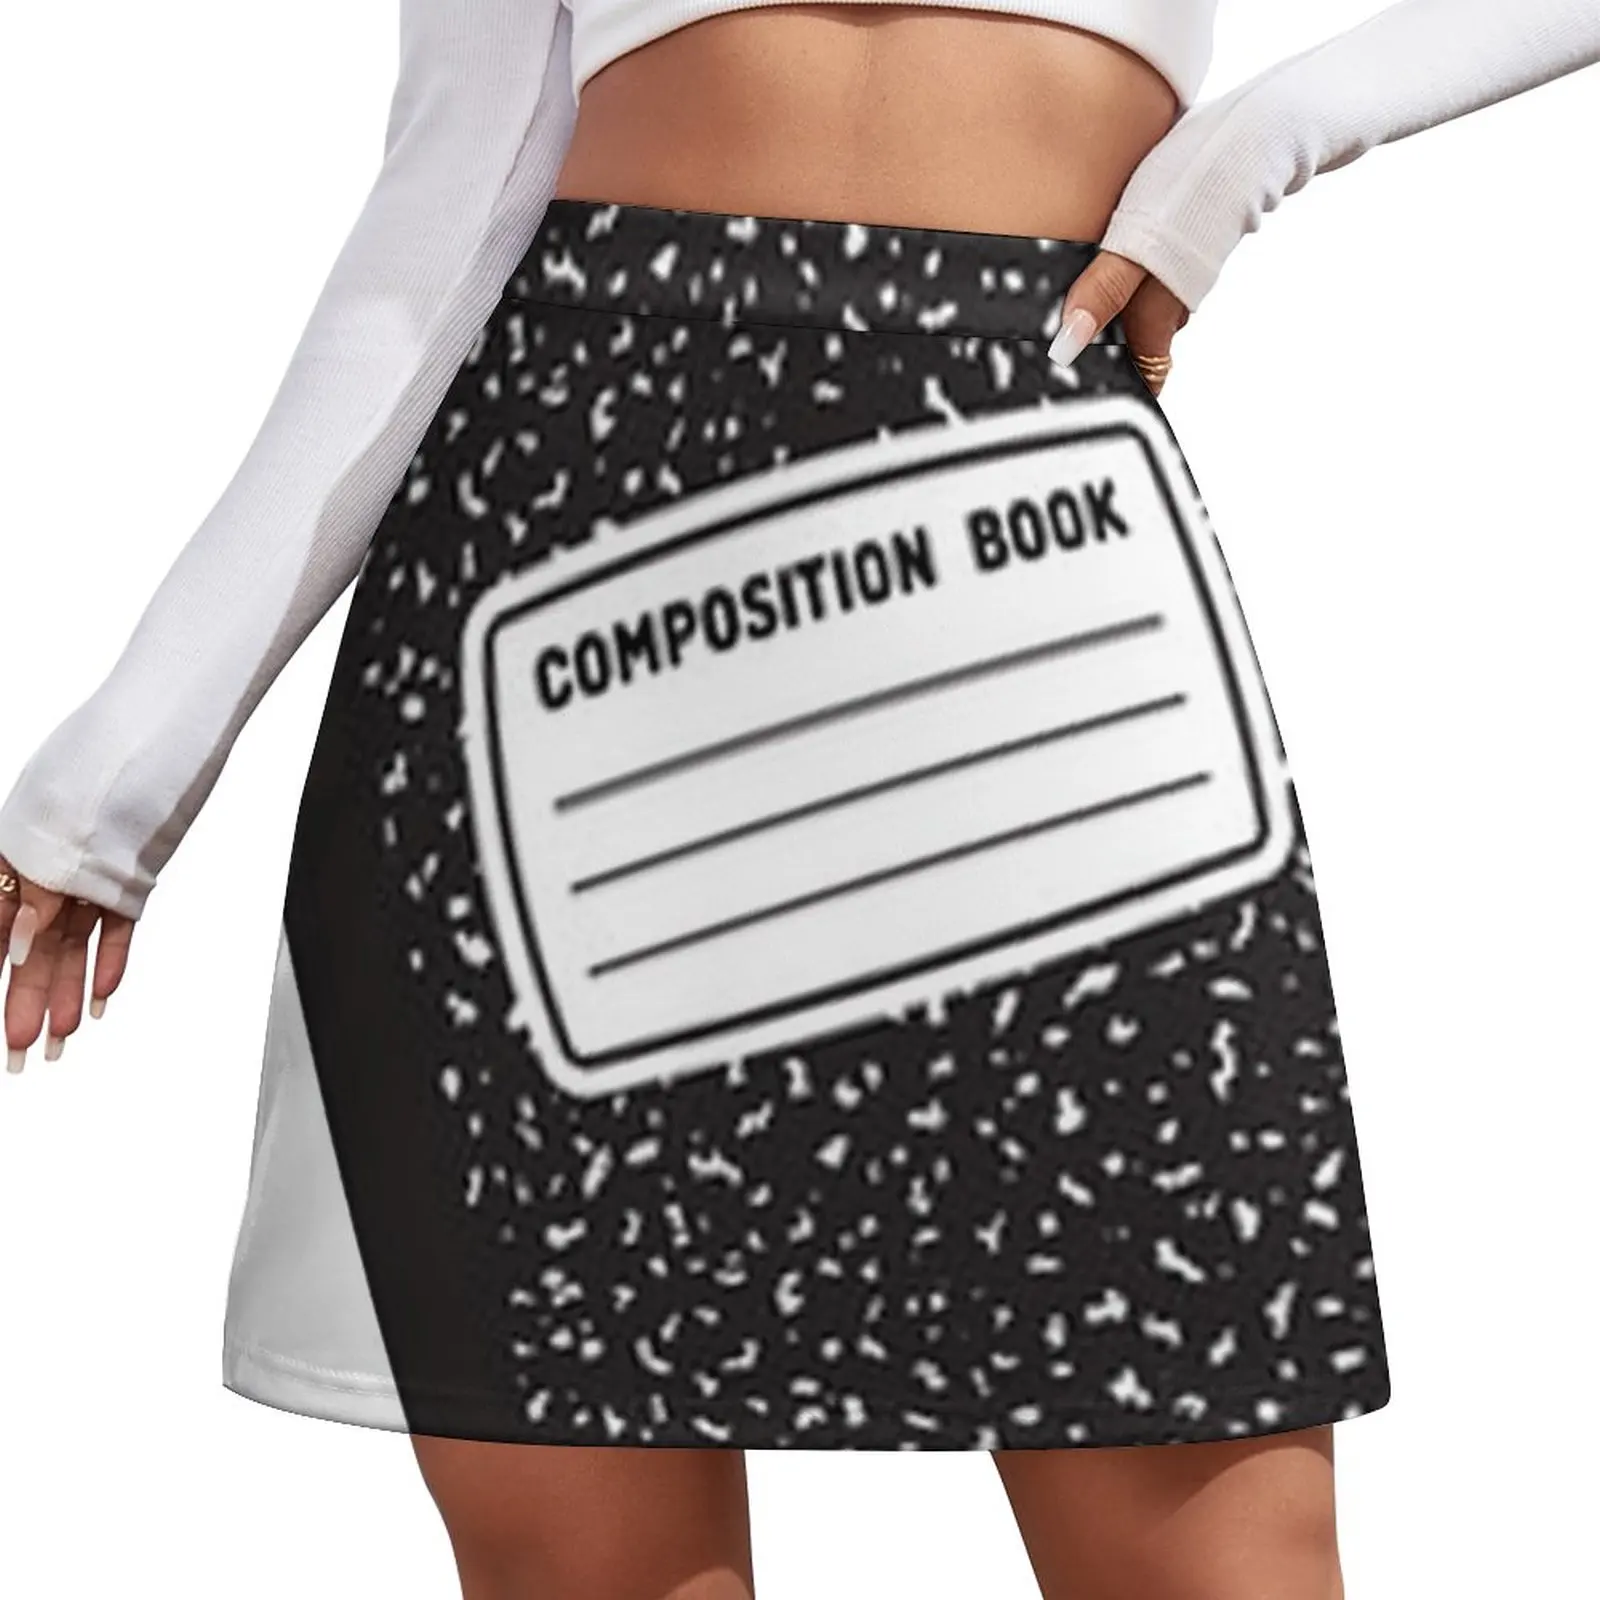 Writing - Composition Book Mini Skirt midi skirt for women Skirt satin